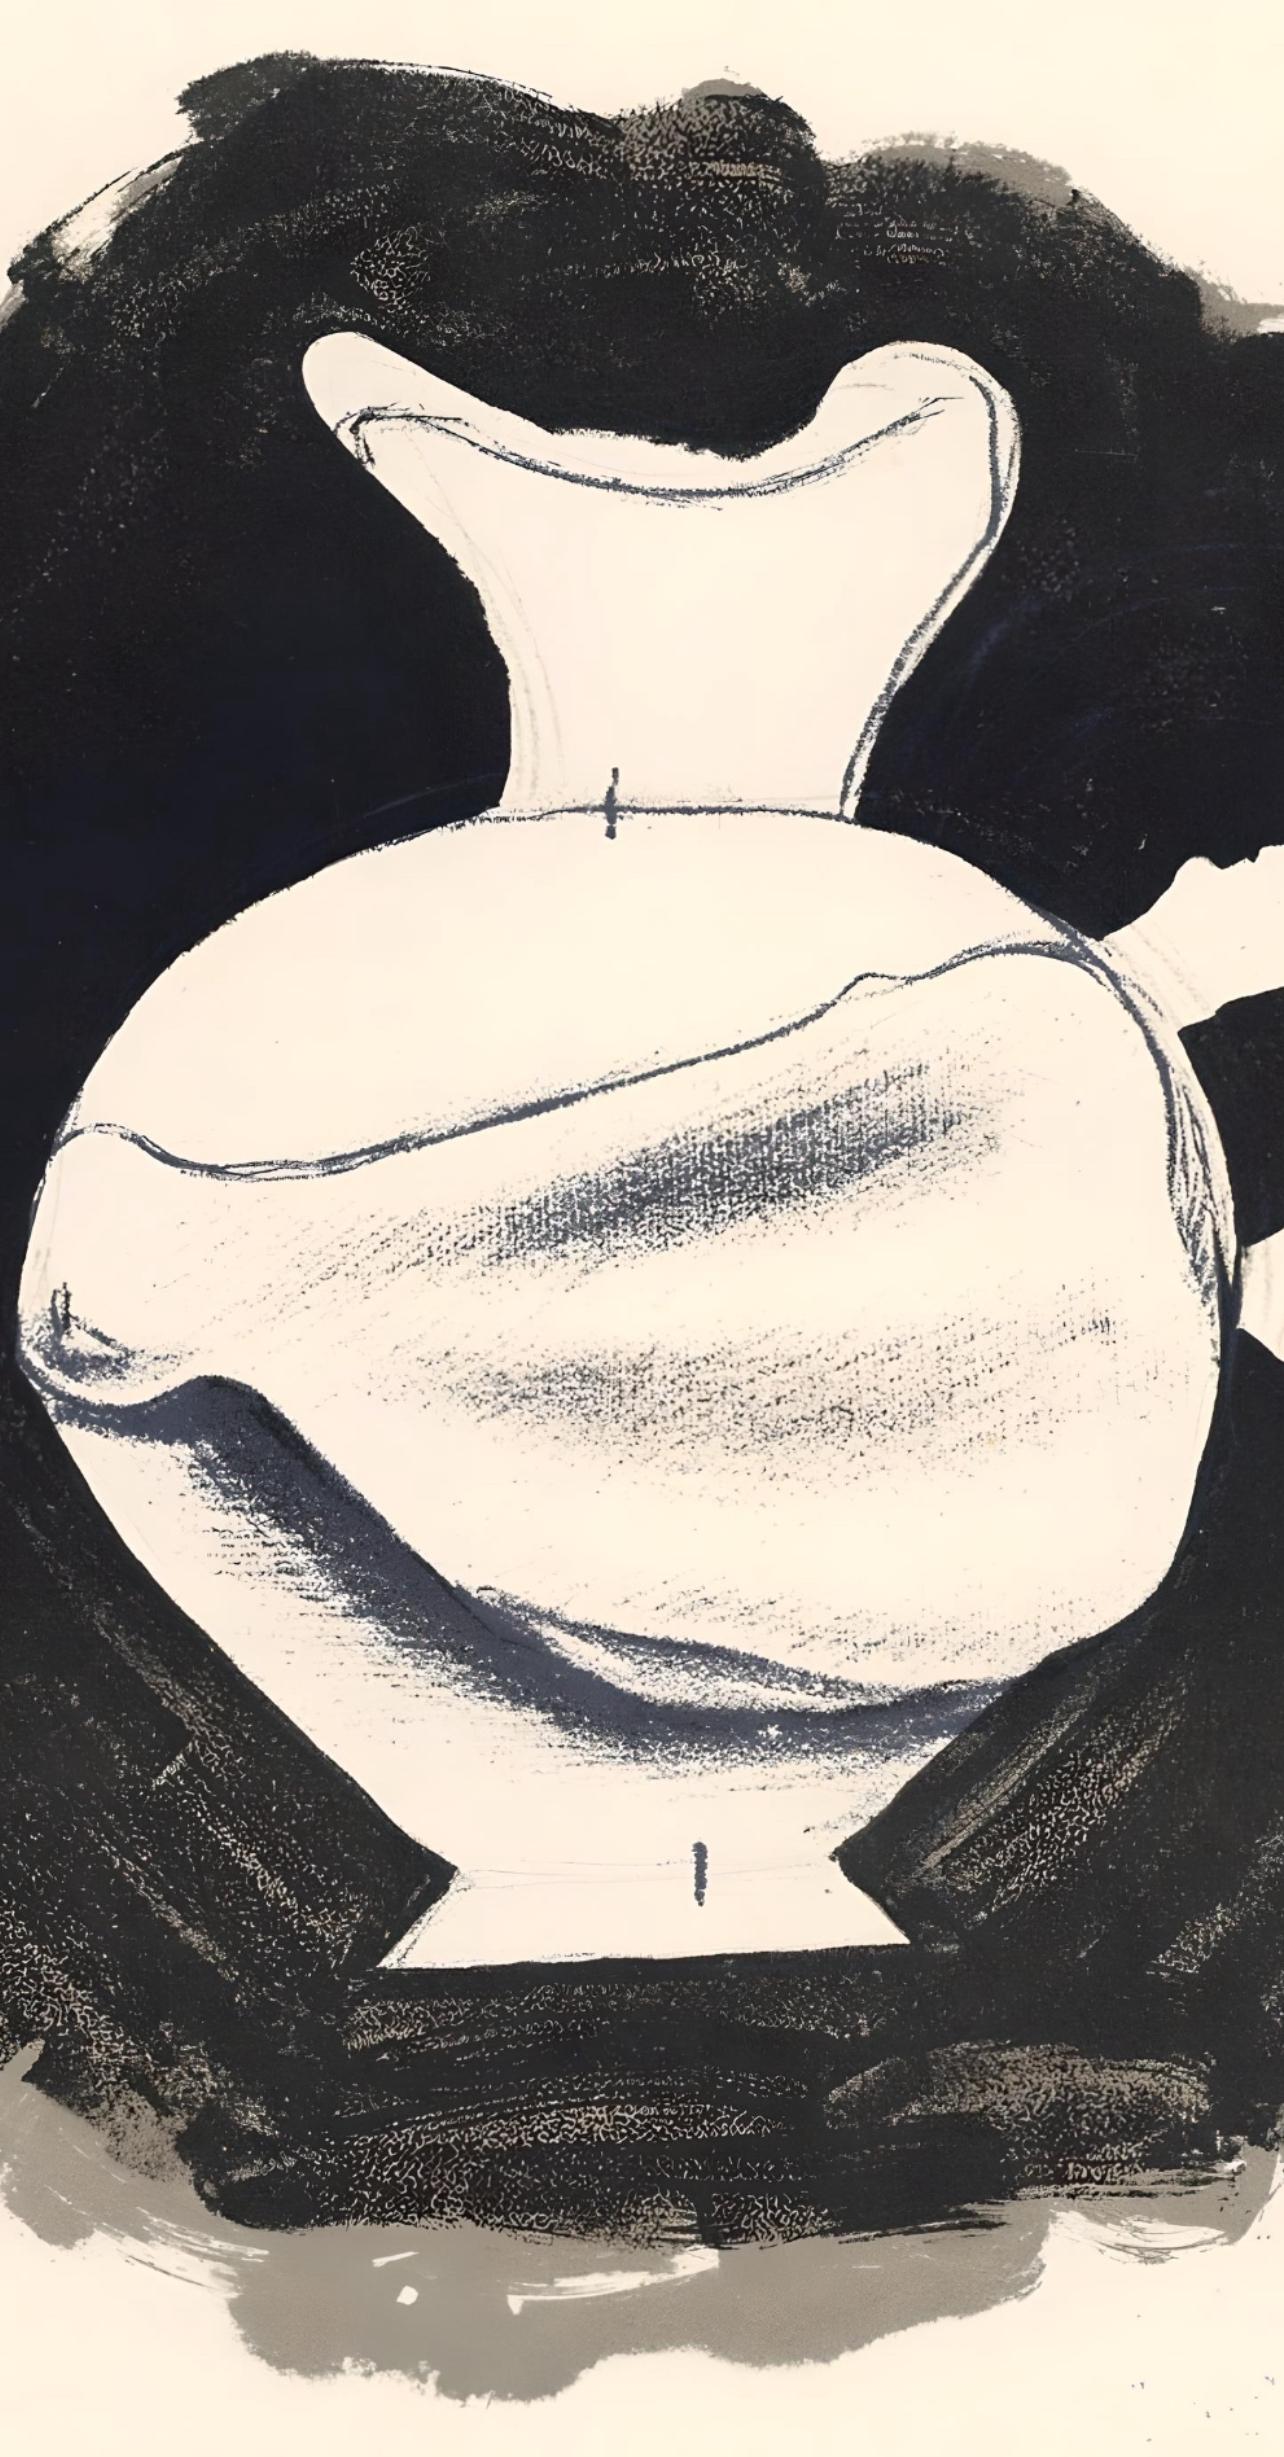 Braque, Nature morte, Derrière le miroir (after) - Print by Georges Braque